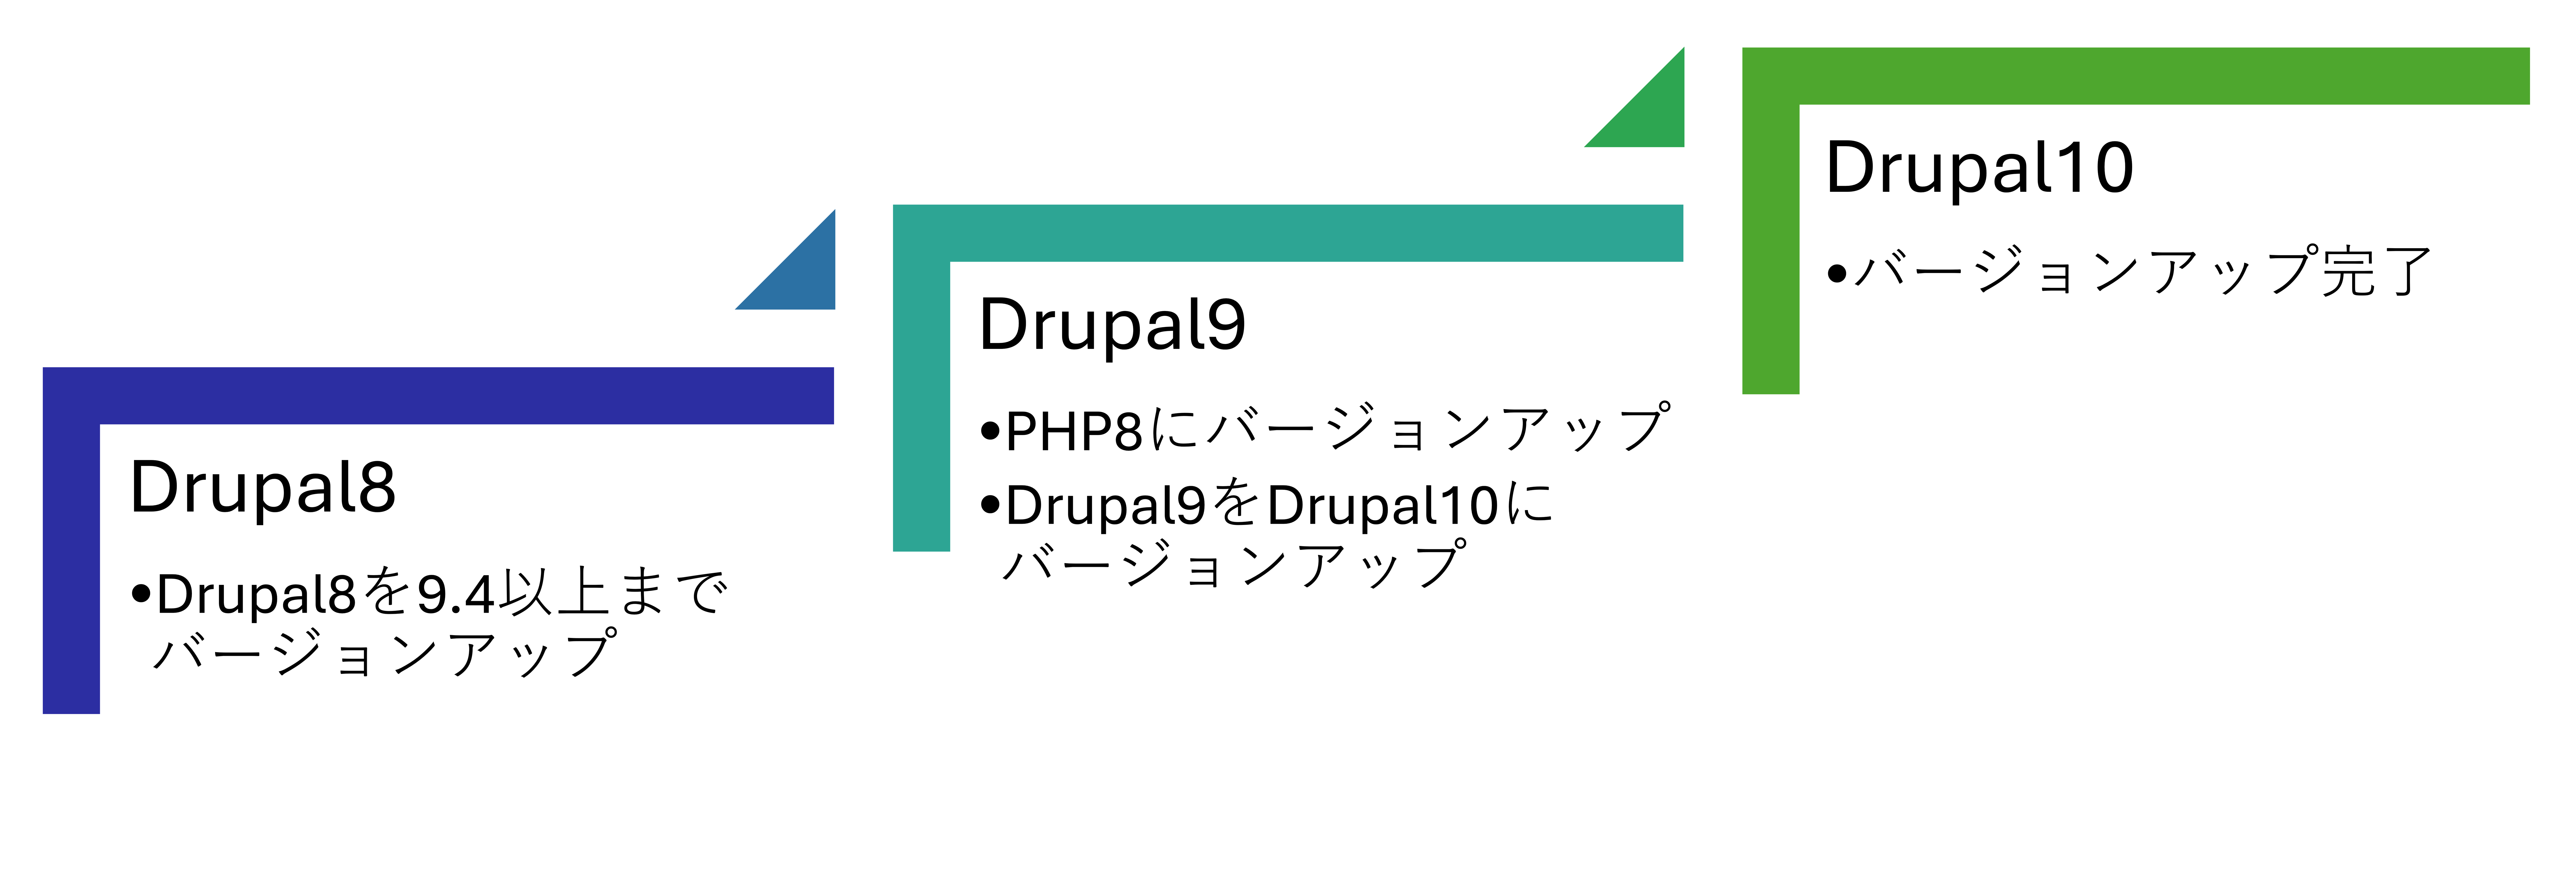 アップグレードの段階 Drupal8→Drupal10